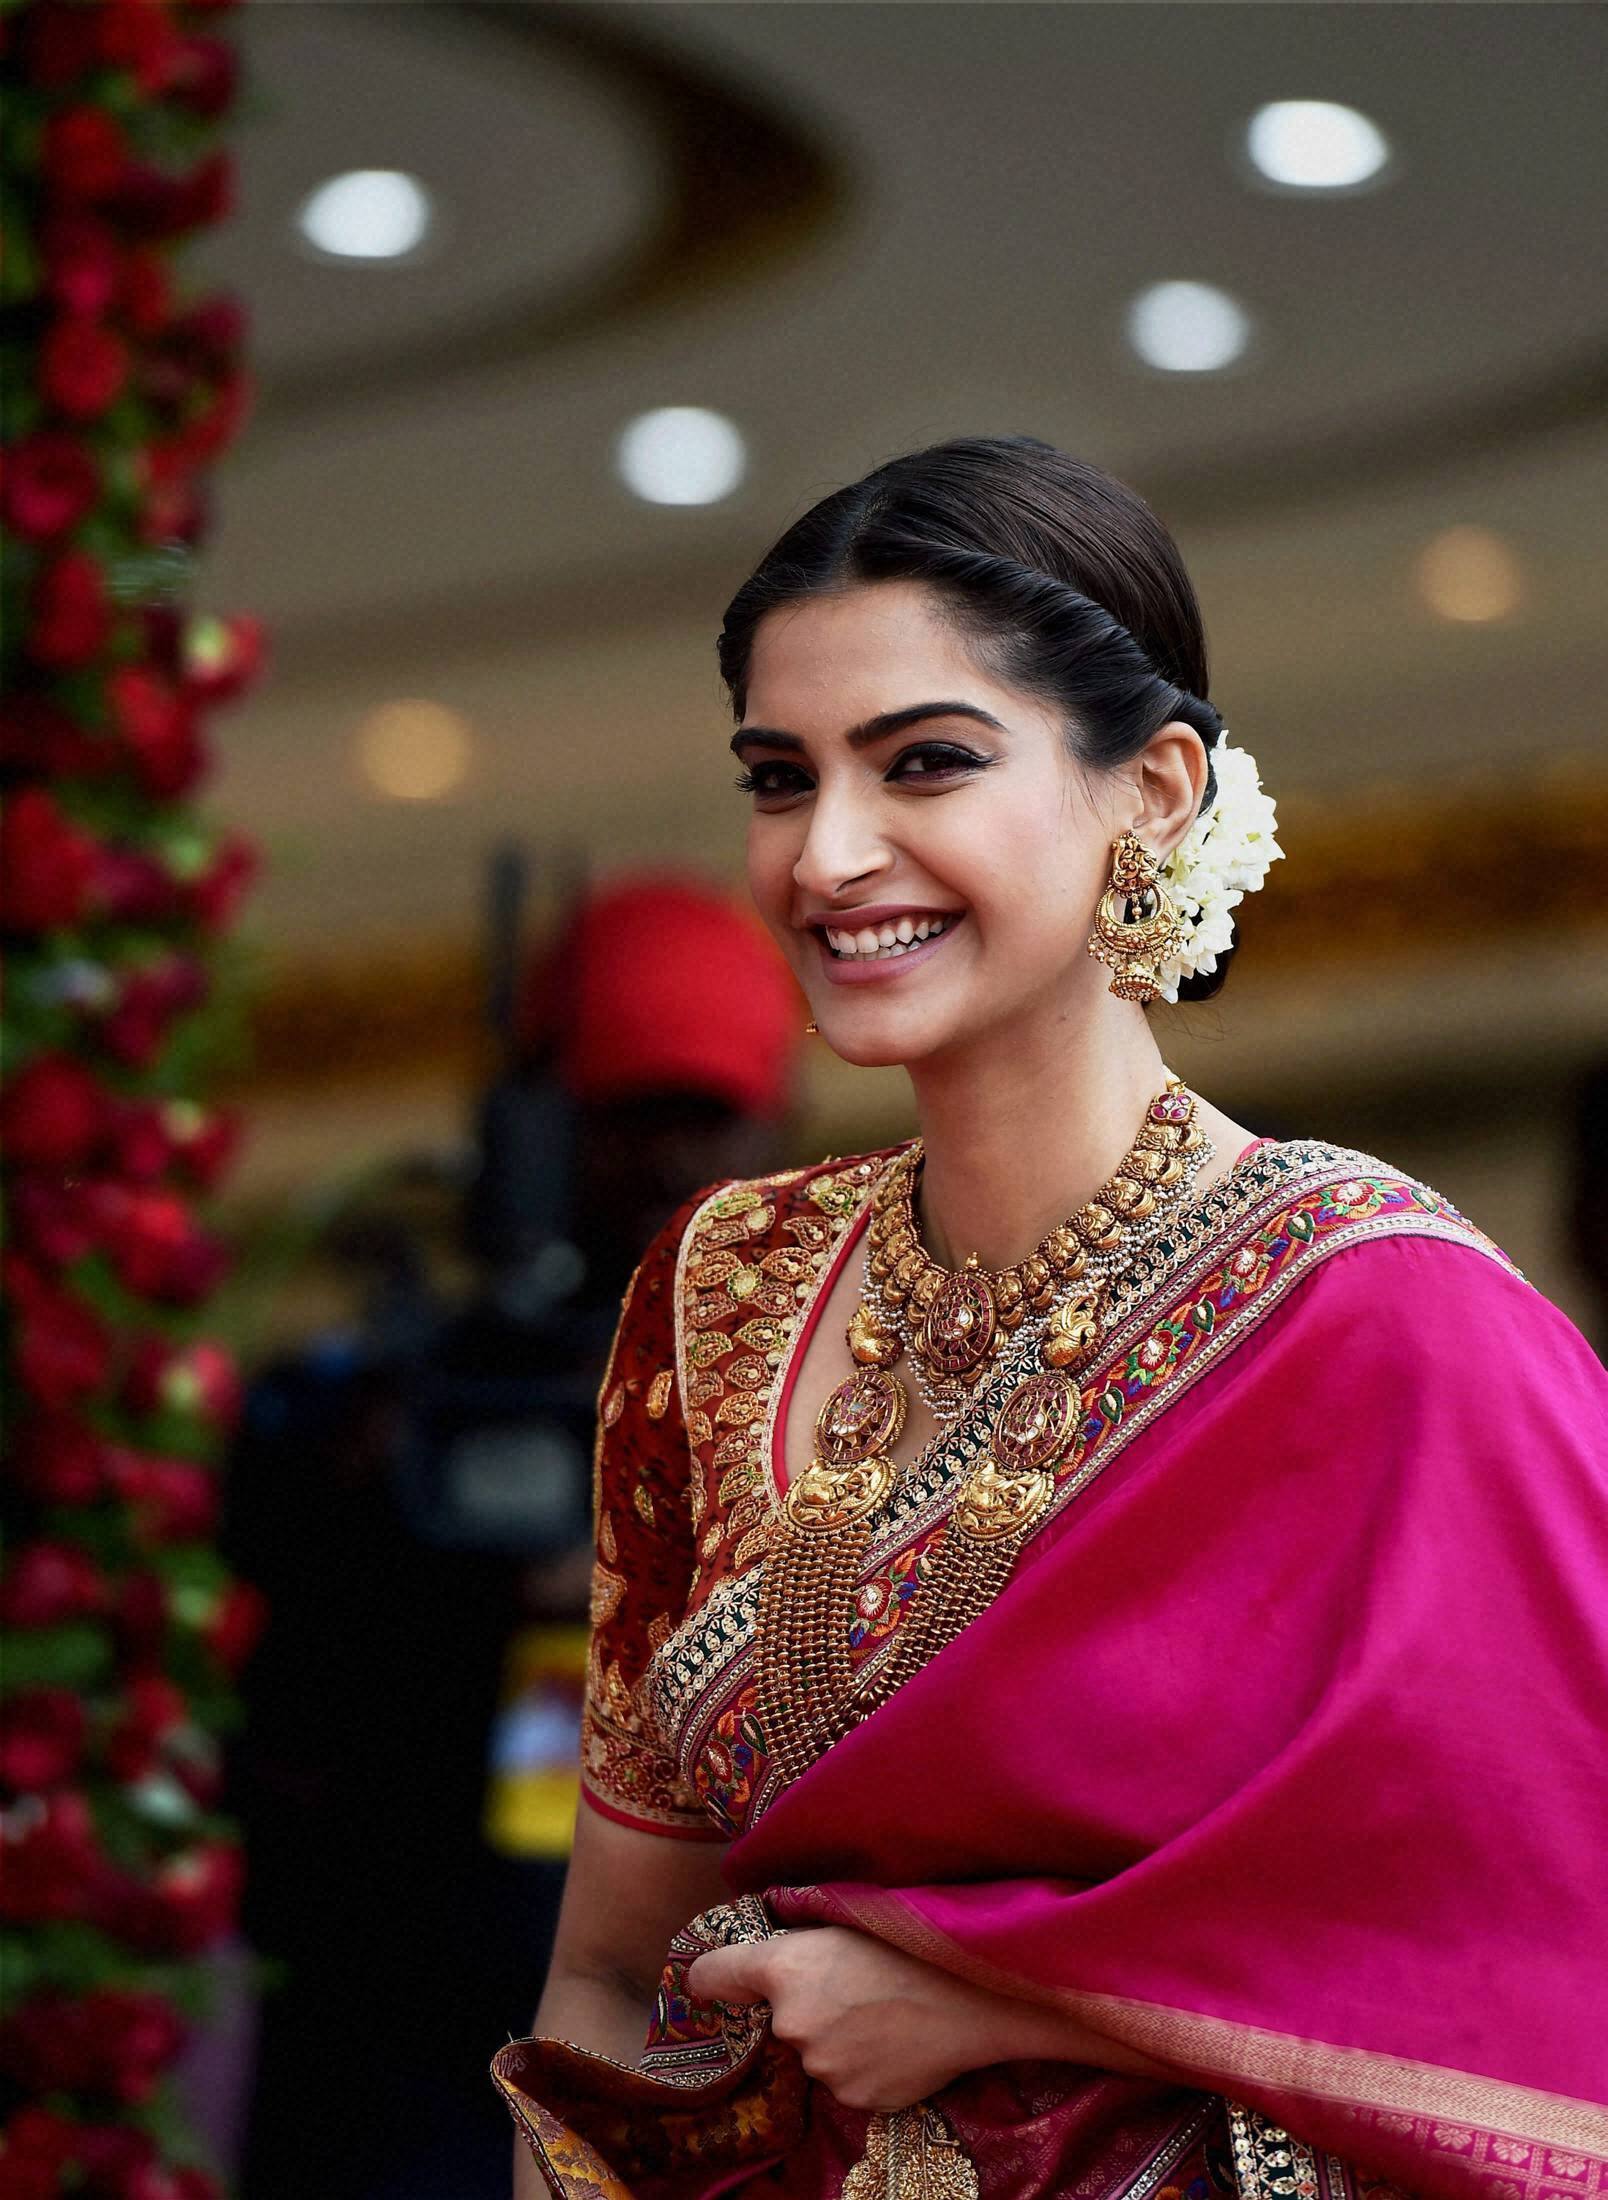 In Pics Sonam Kapoor looks like a Tamil bride